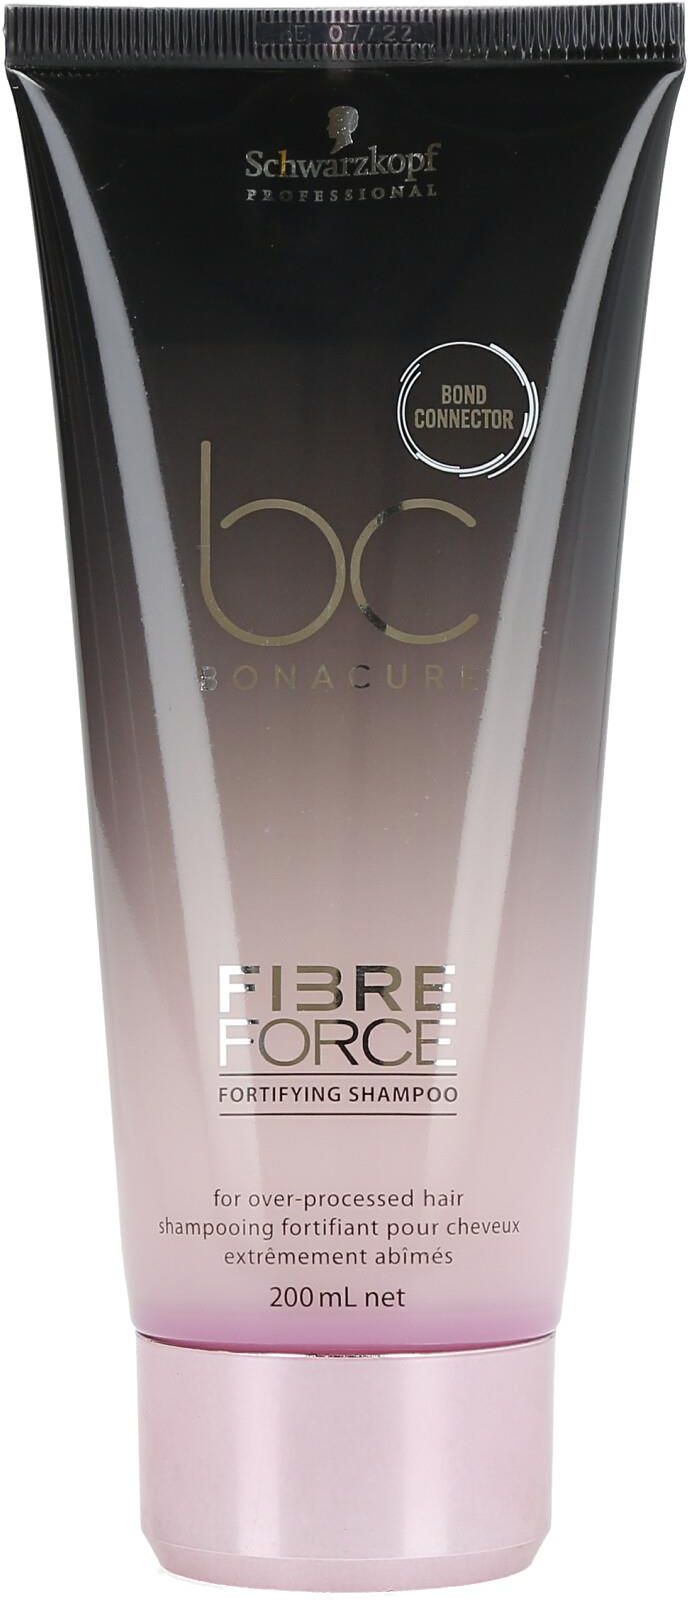 schwarzkopf bc fibre force szampon regenerujący z keratyną 1000ml